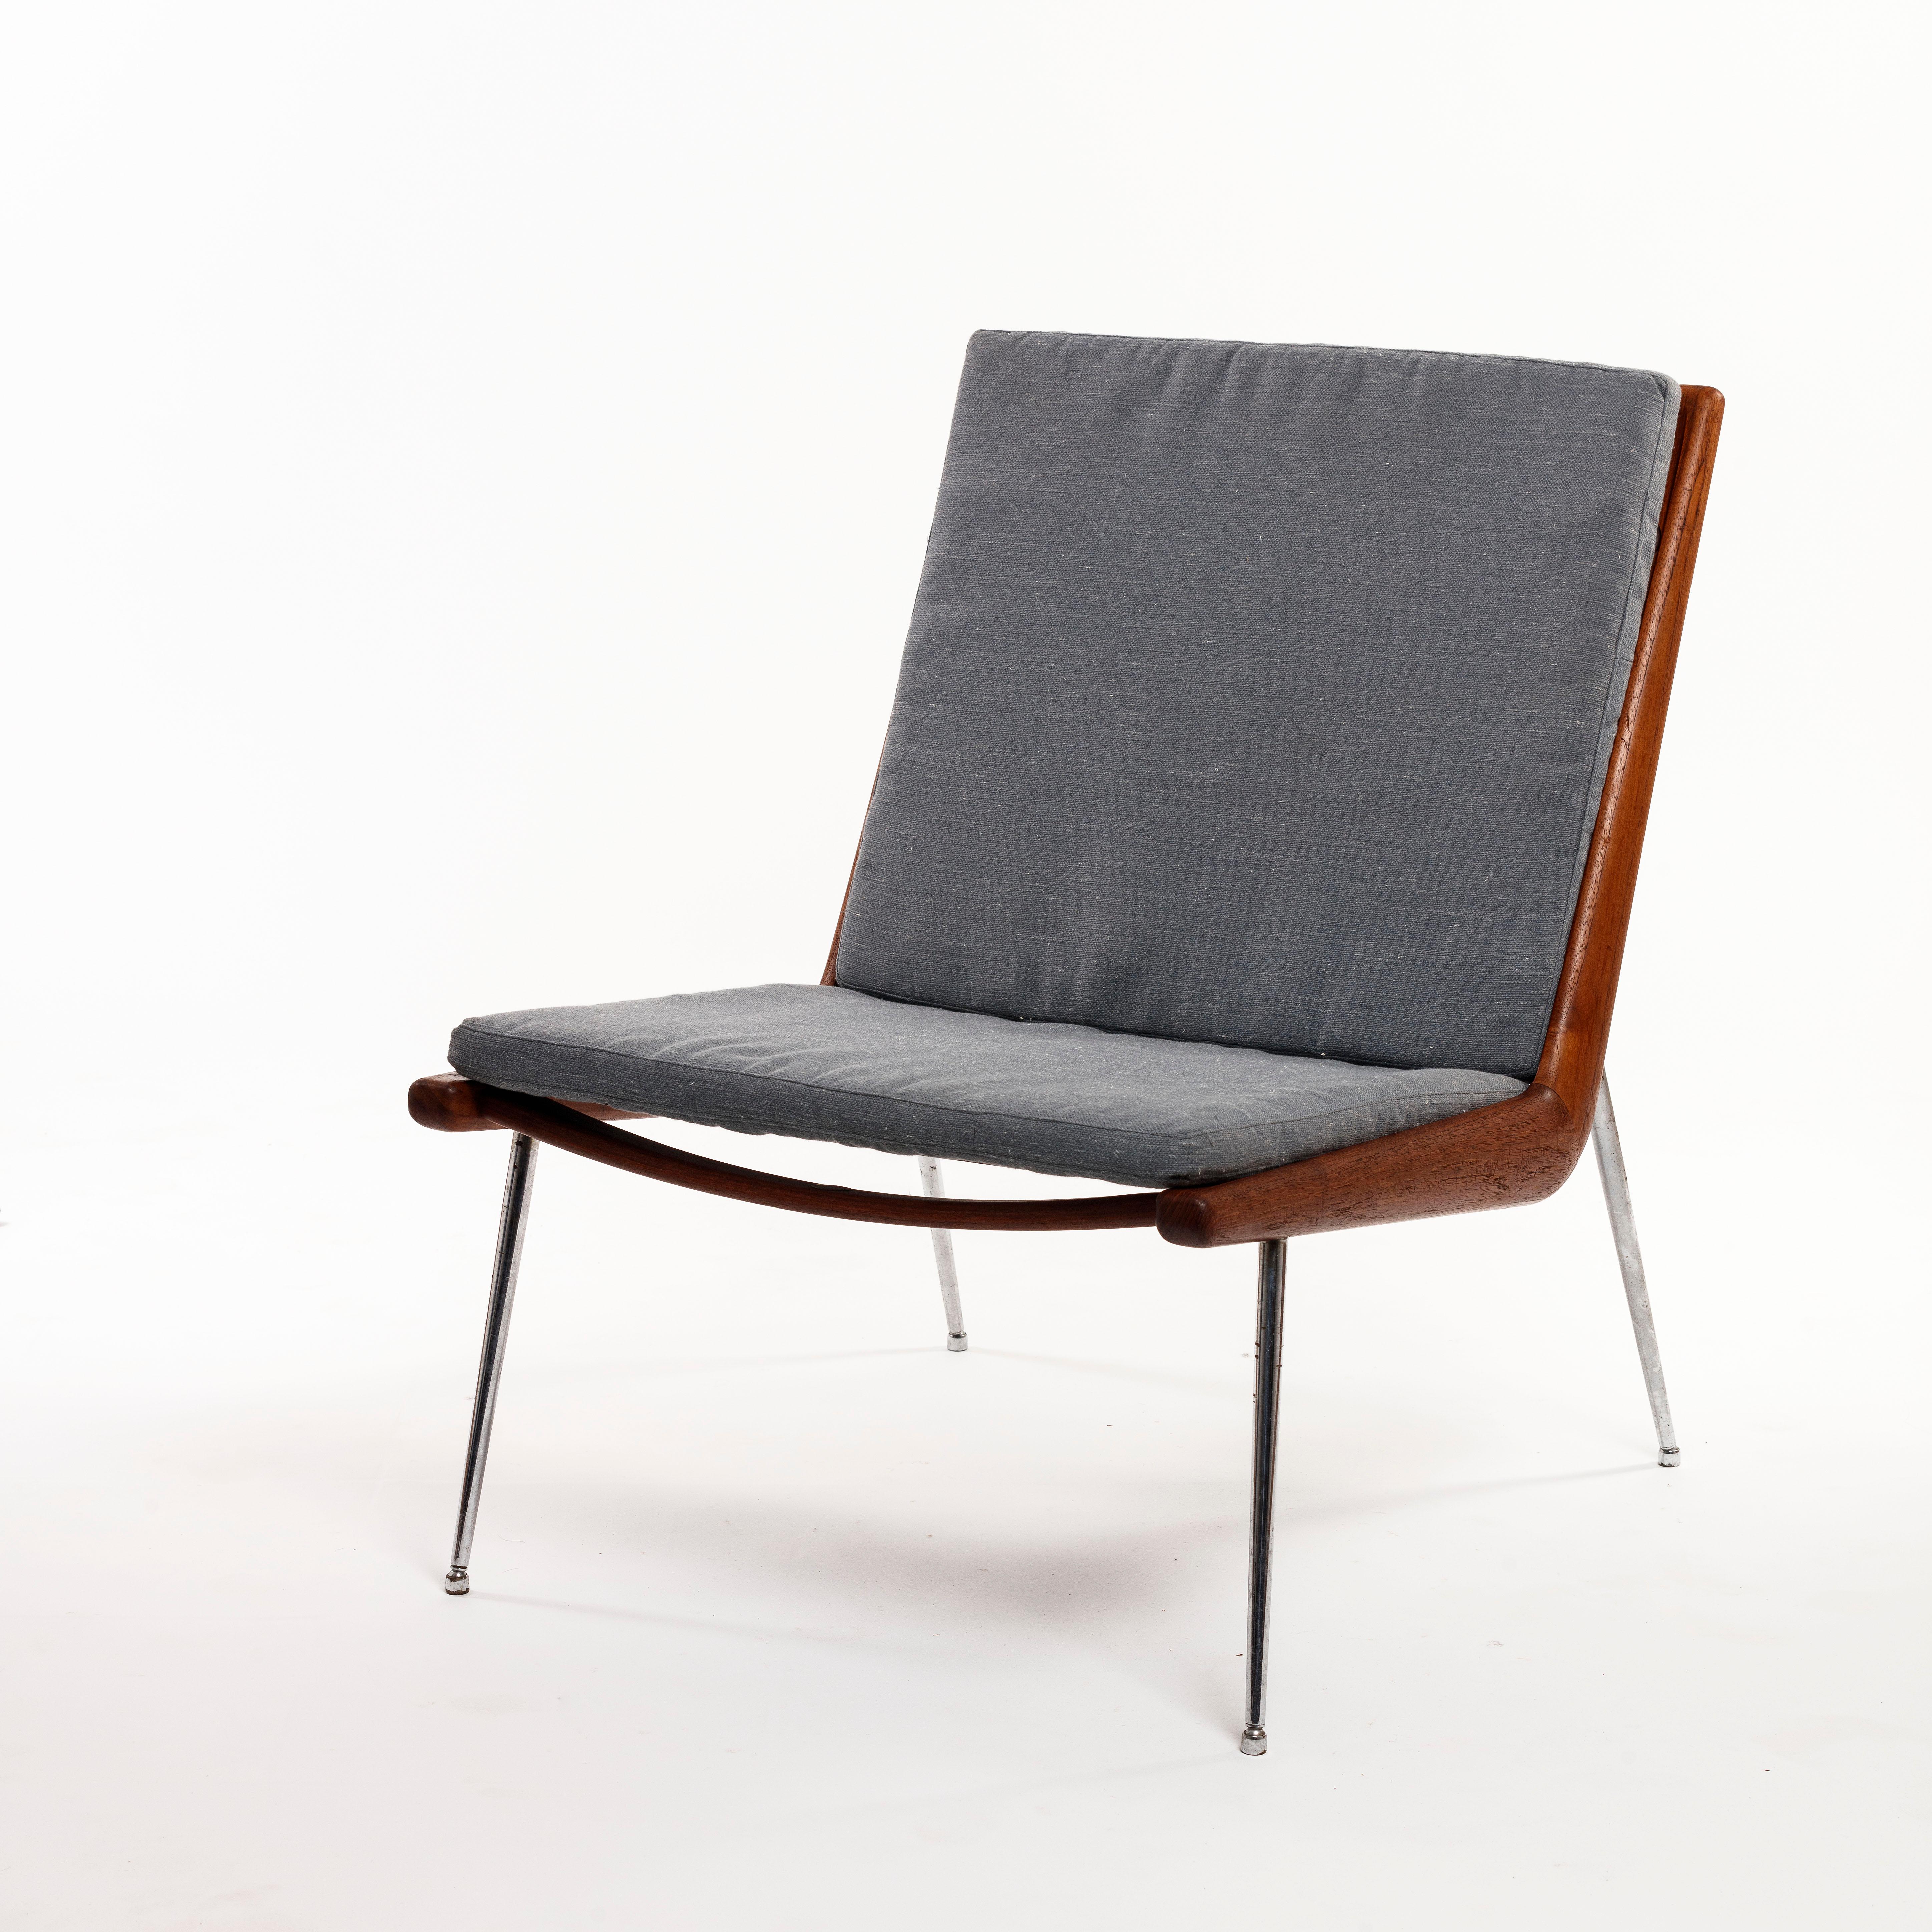 Conçu par Peter Hvidt (1916-1986) et Orla Mølgaard Nielsen (1907-1993), architectes et designers de meubles danois, véritables pionniers du design danois du milieu du siècle et fondateurs de l'entreprise Hvidt & Mølgaard, basée à Copenhague.
Parmi